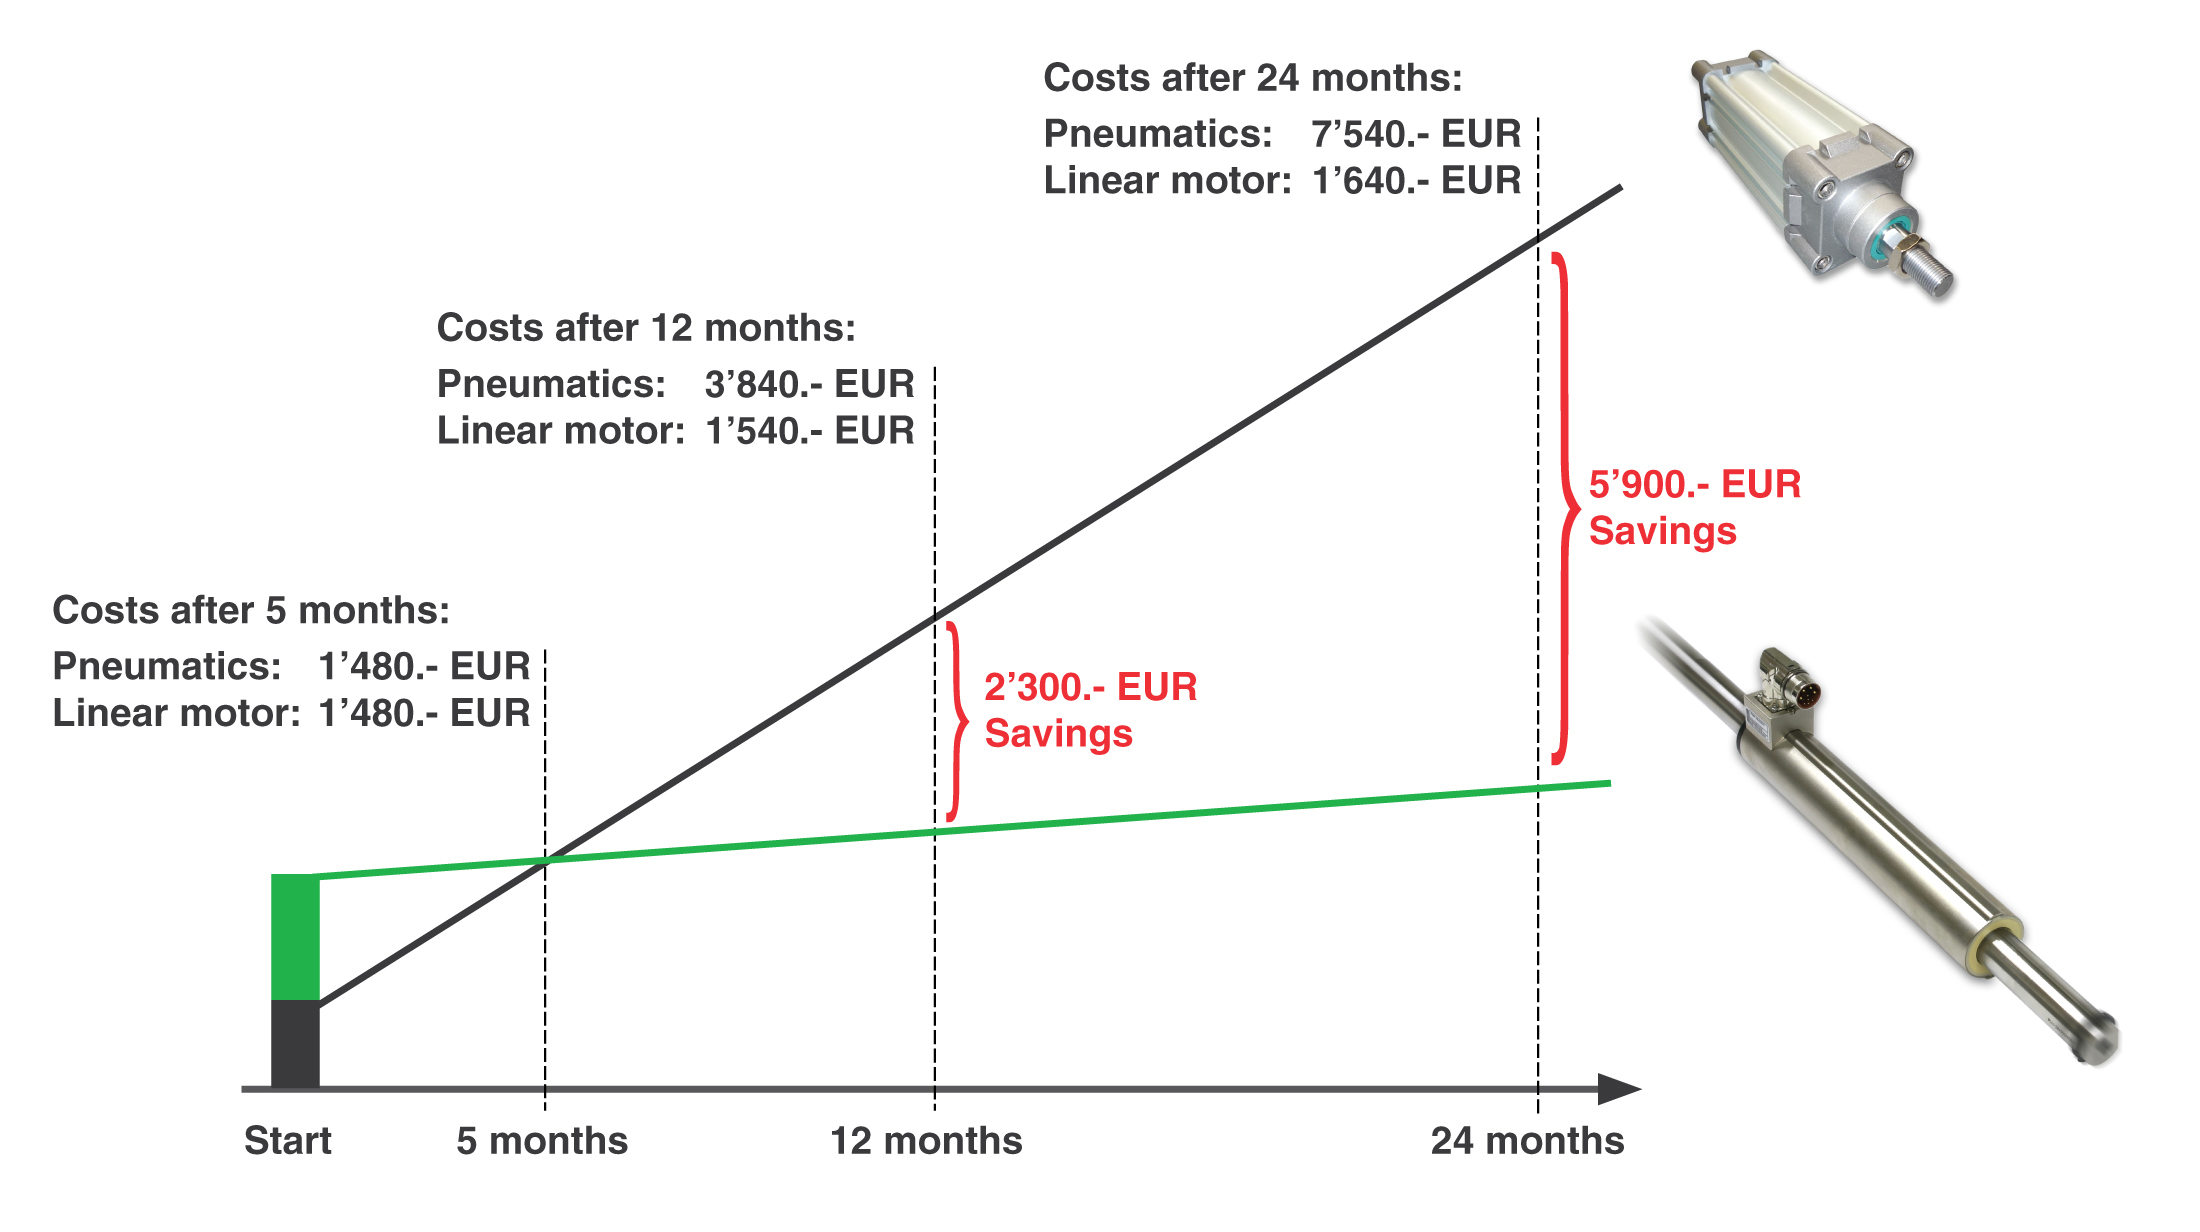 השוואת עלויות על בסיס השקעה ראשונית ועלויות אנרגיה תפעולית